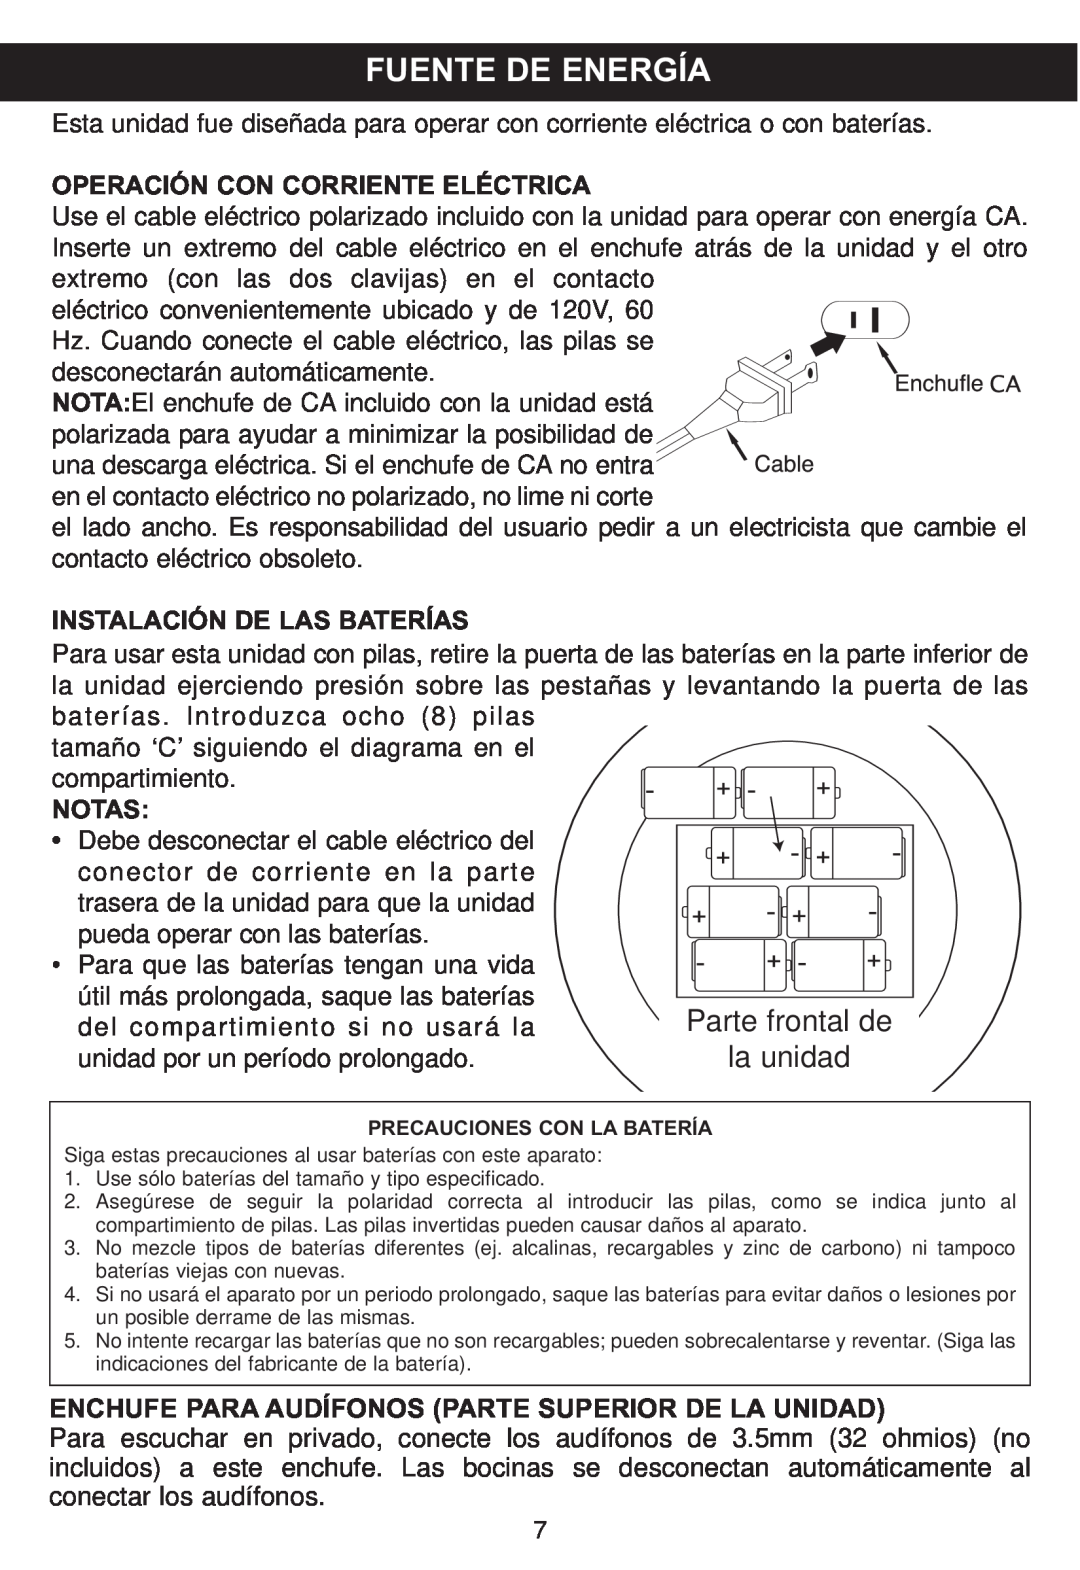 Memorex MP4047 manual Fuente De Energía, Parte frontal de, la unidad, Operación Con Corriente Eléctrica, Notas 